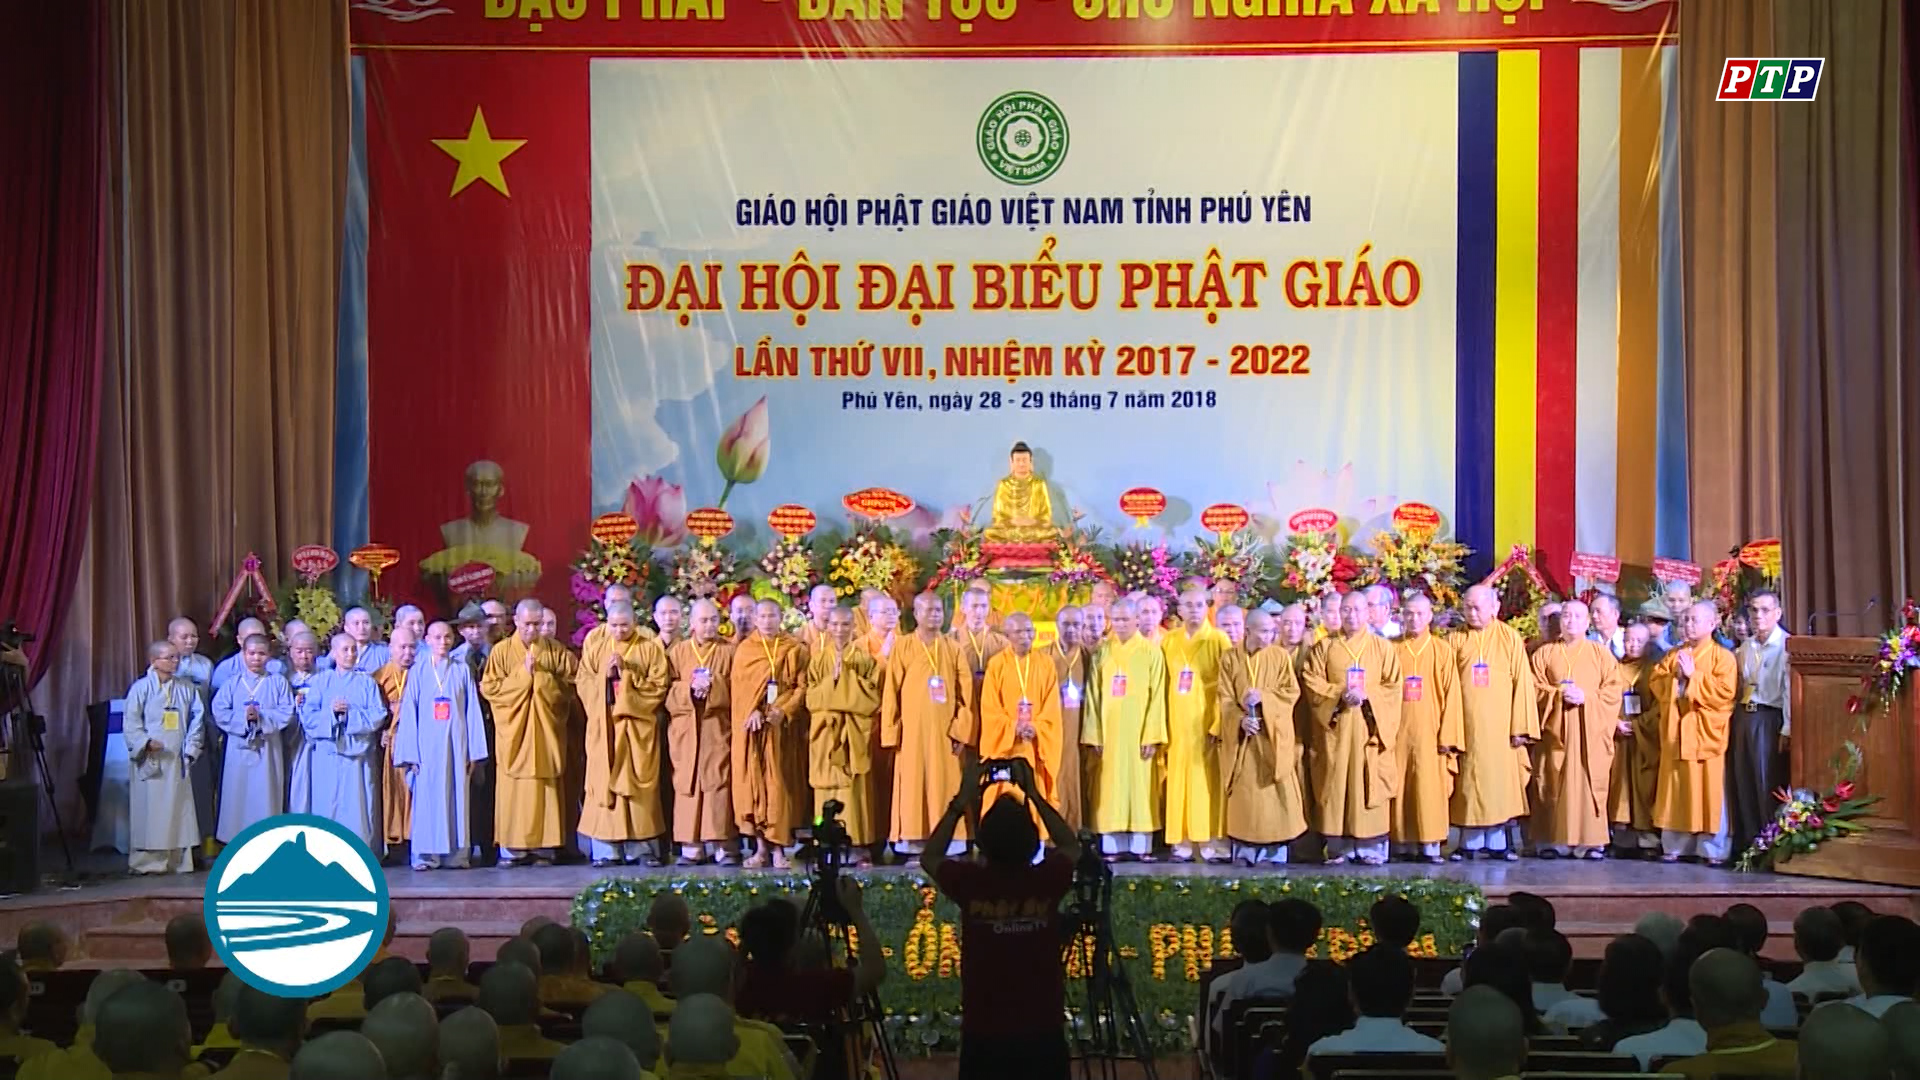 Đại hội Đại biểu Phật giáo Việt Nam tỉnh Phú Yên lần thứ VII